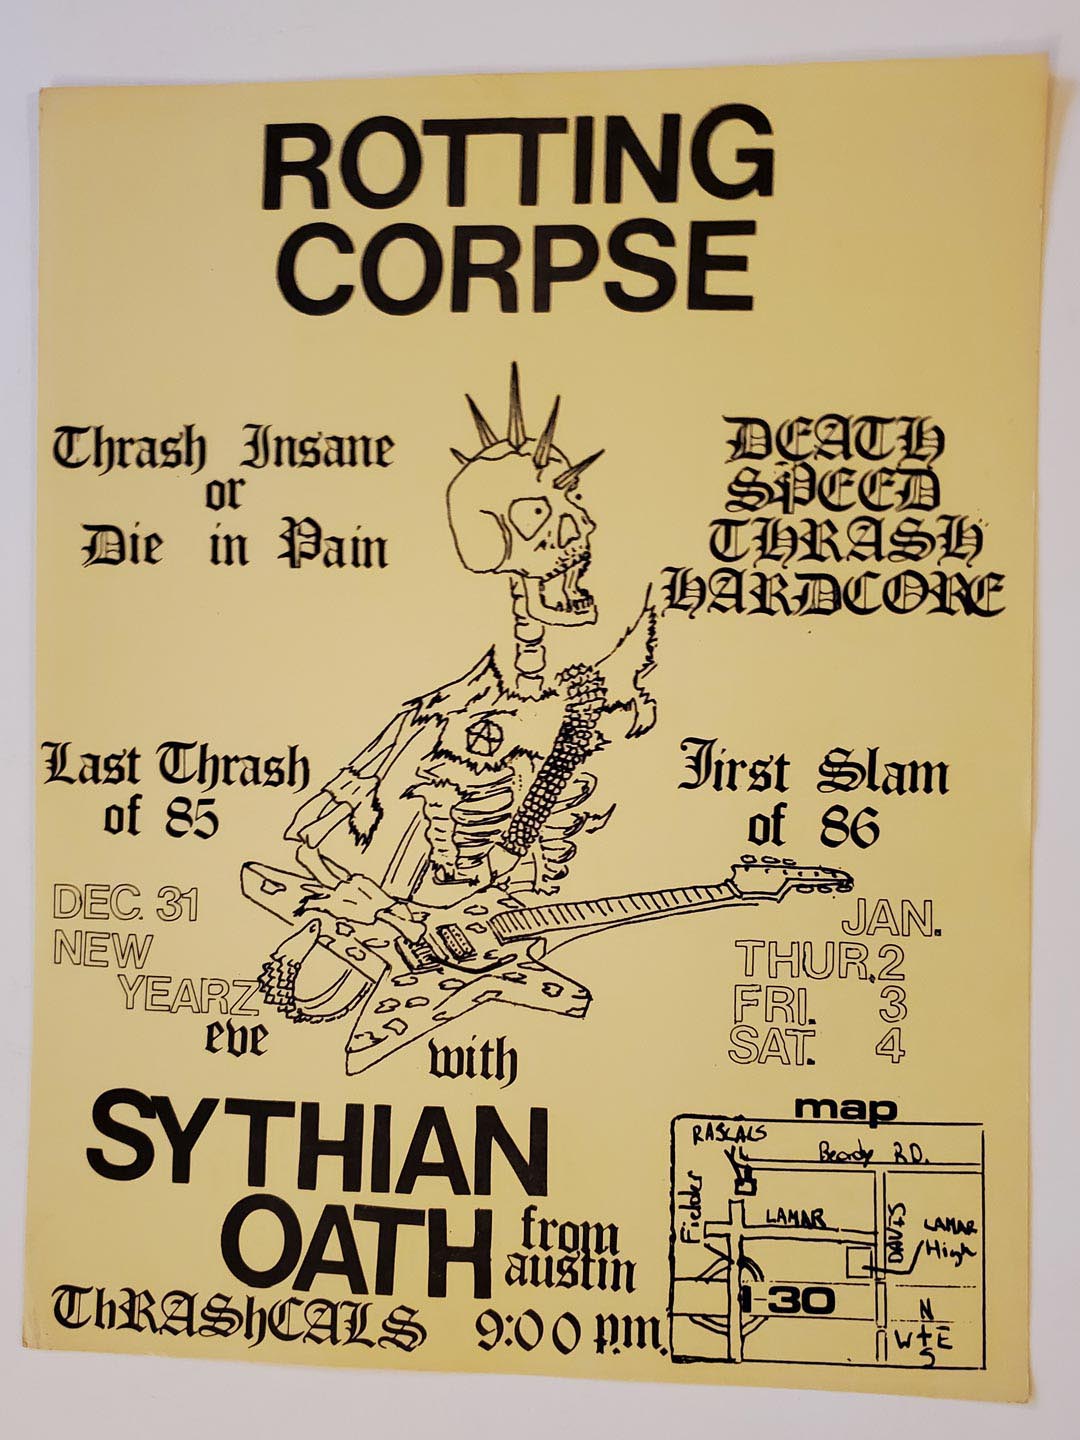 Rotting Corpse Flyer, John Perez (1985-12-31)